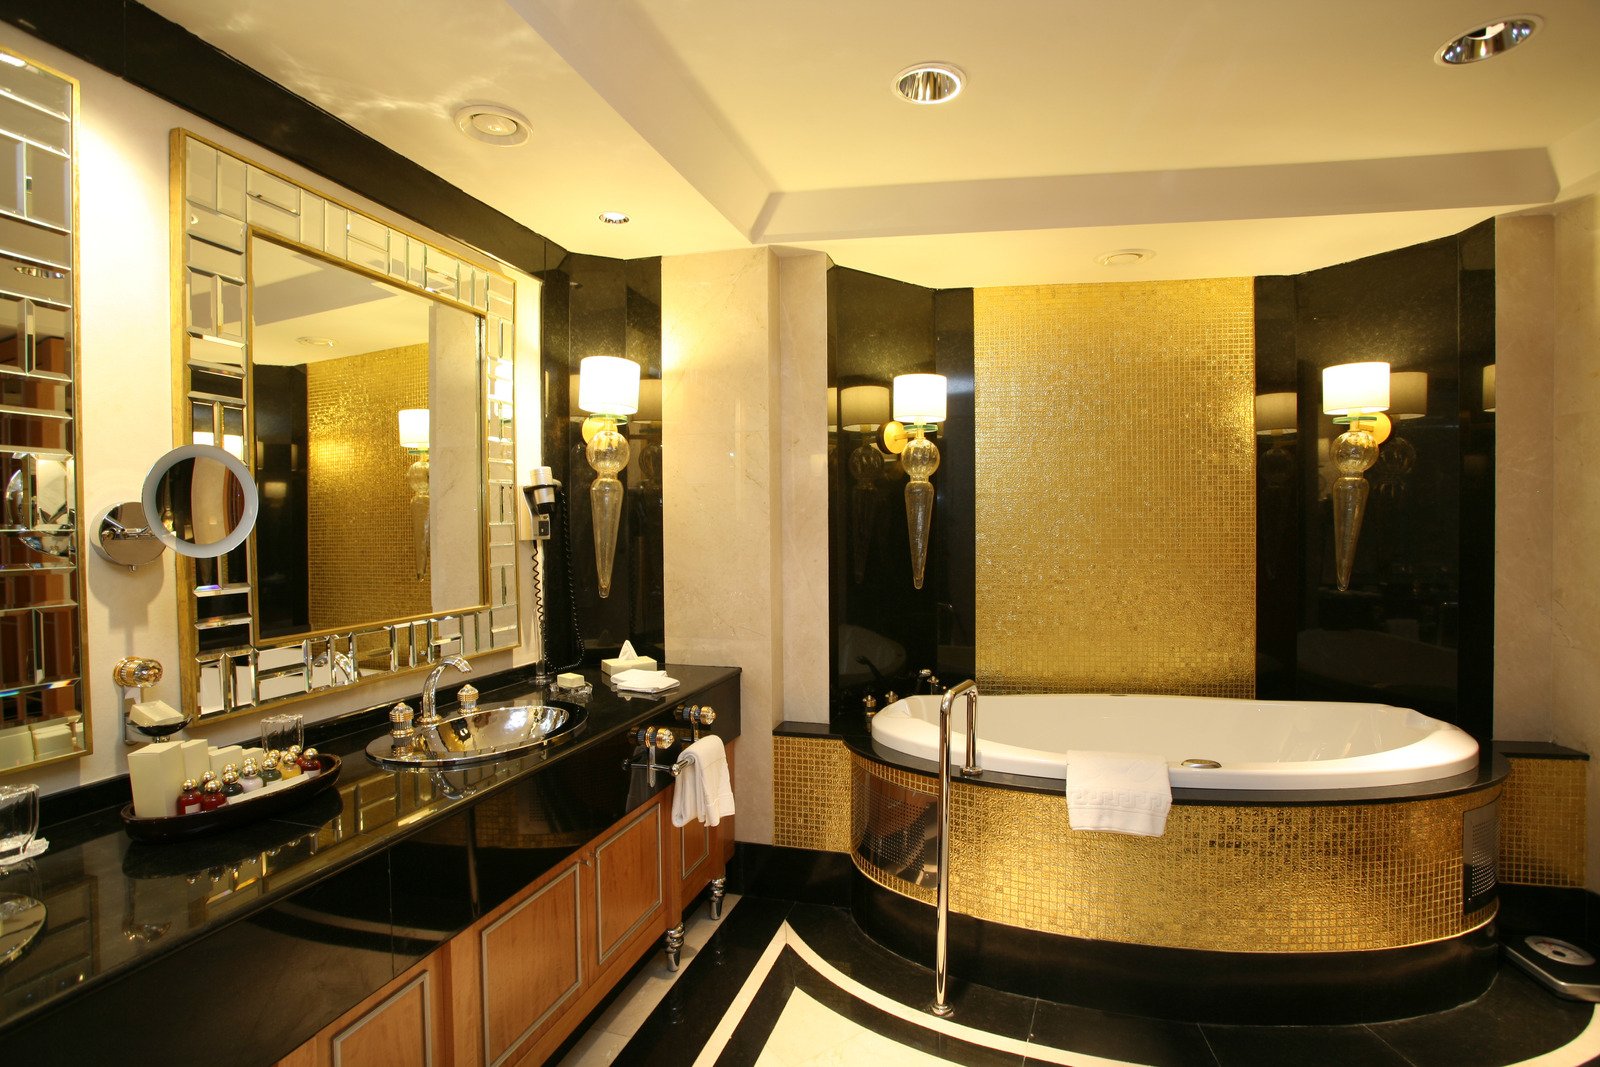 łazienka glamour ze złotymi elementami ozdobnymi